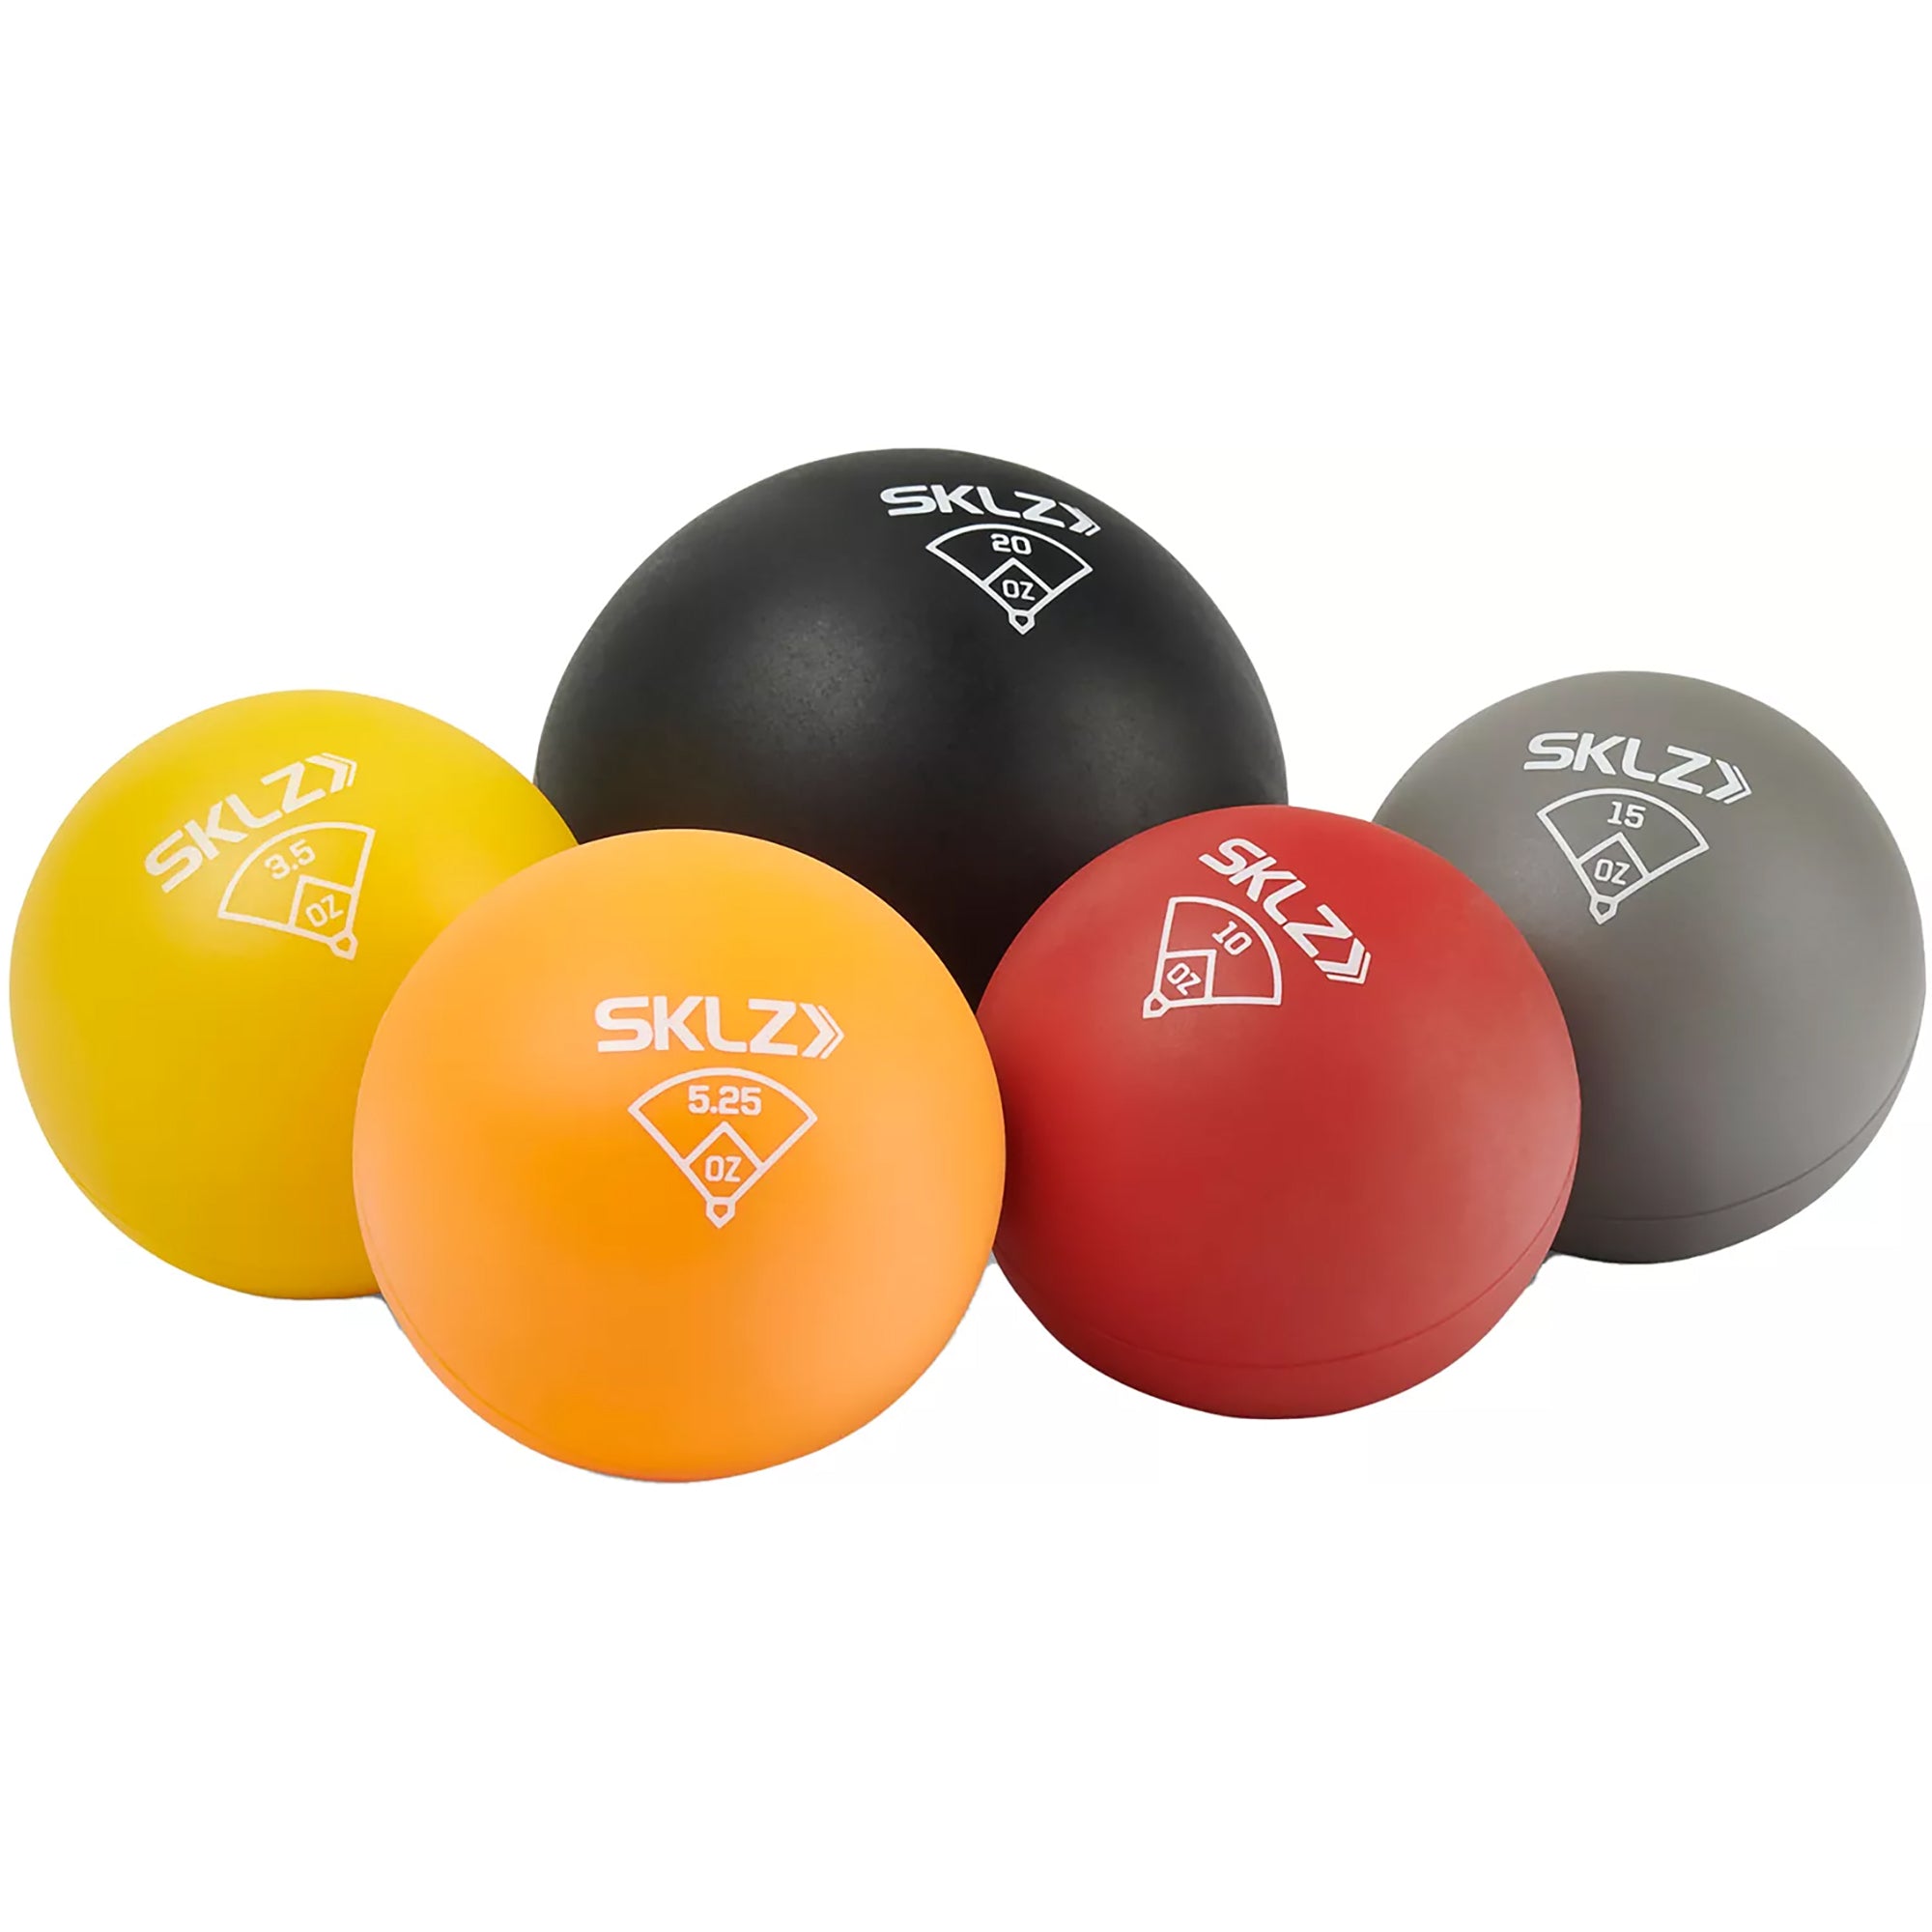 SKLZ Throwing Plyo Balls for Pitching Training SKLZ